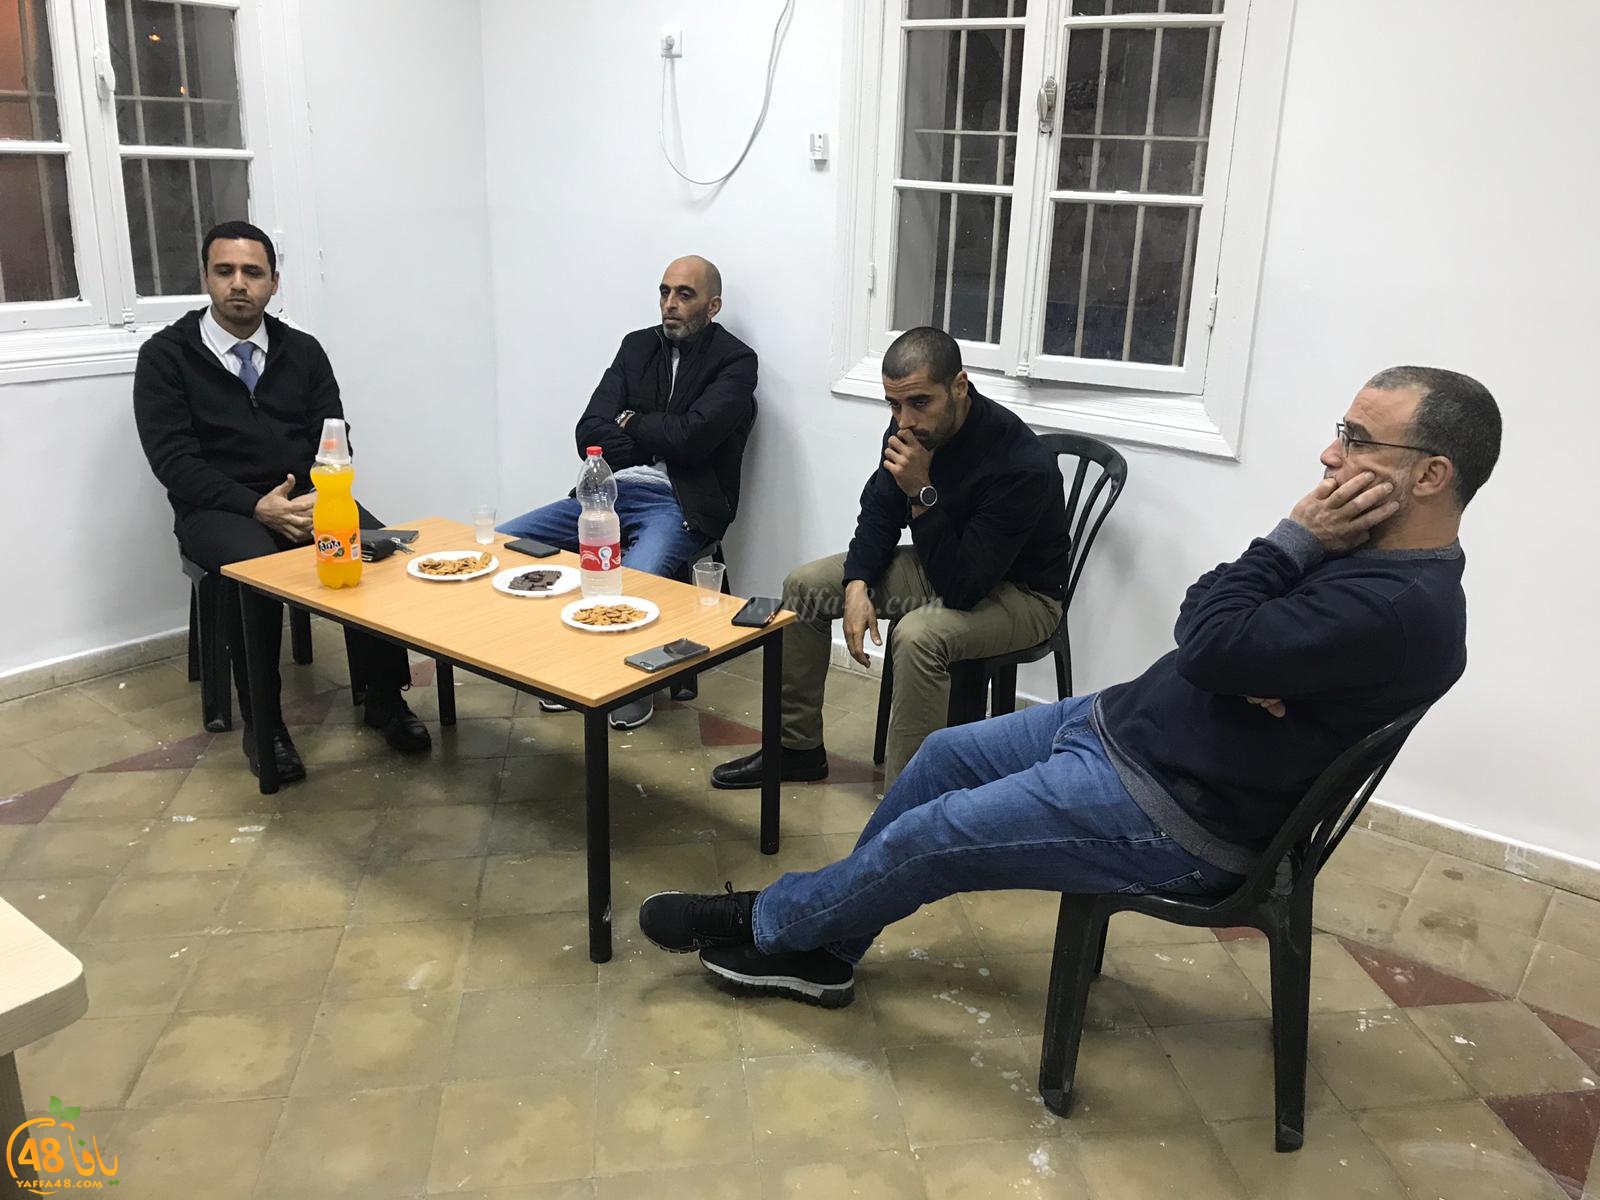 بالصور: اجتماع في النادي الاسلامي لبحث الميزانية السنوية وزيادة النشاطات